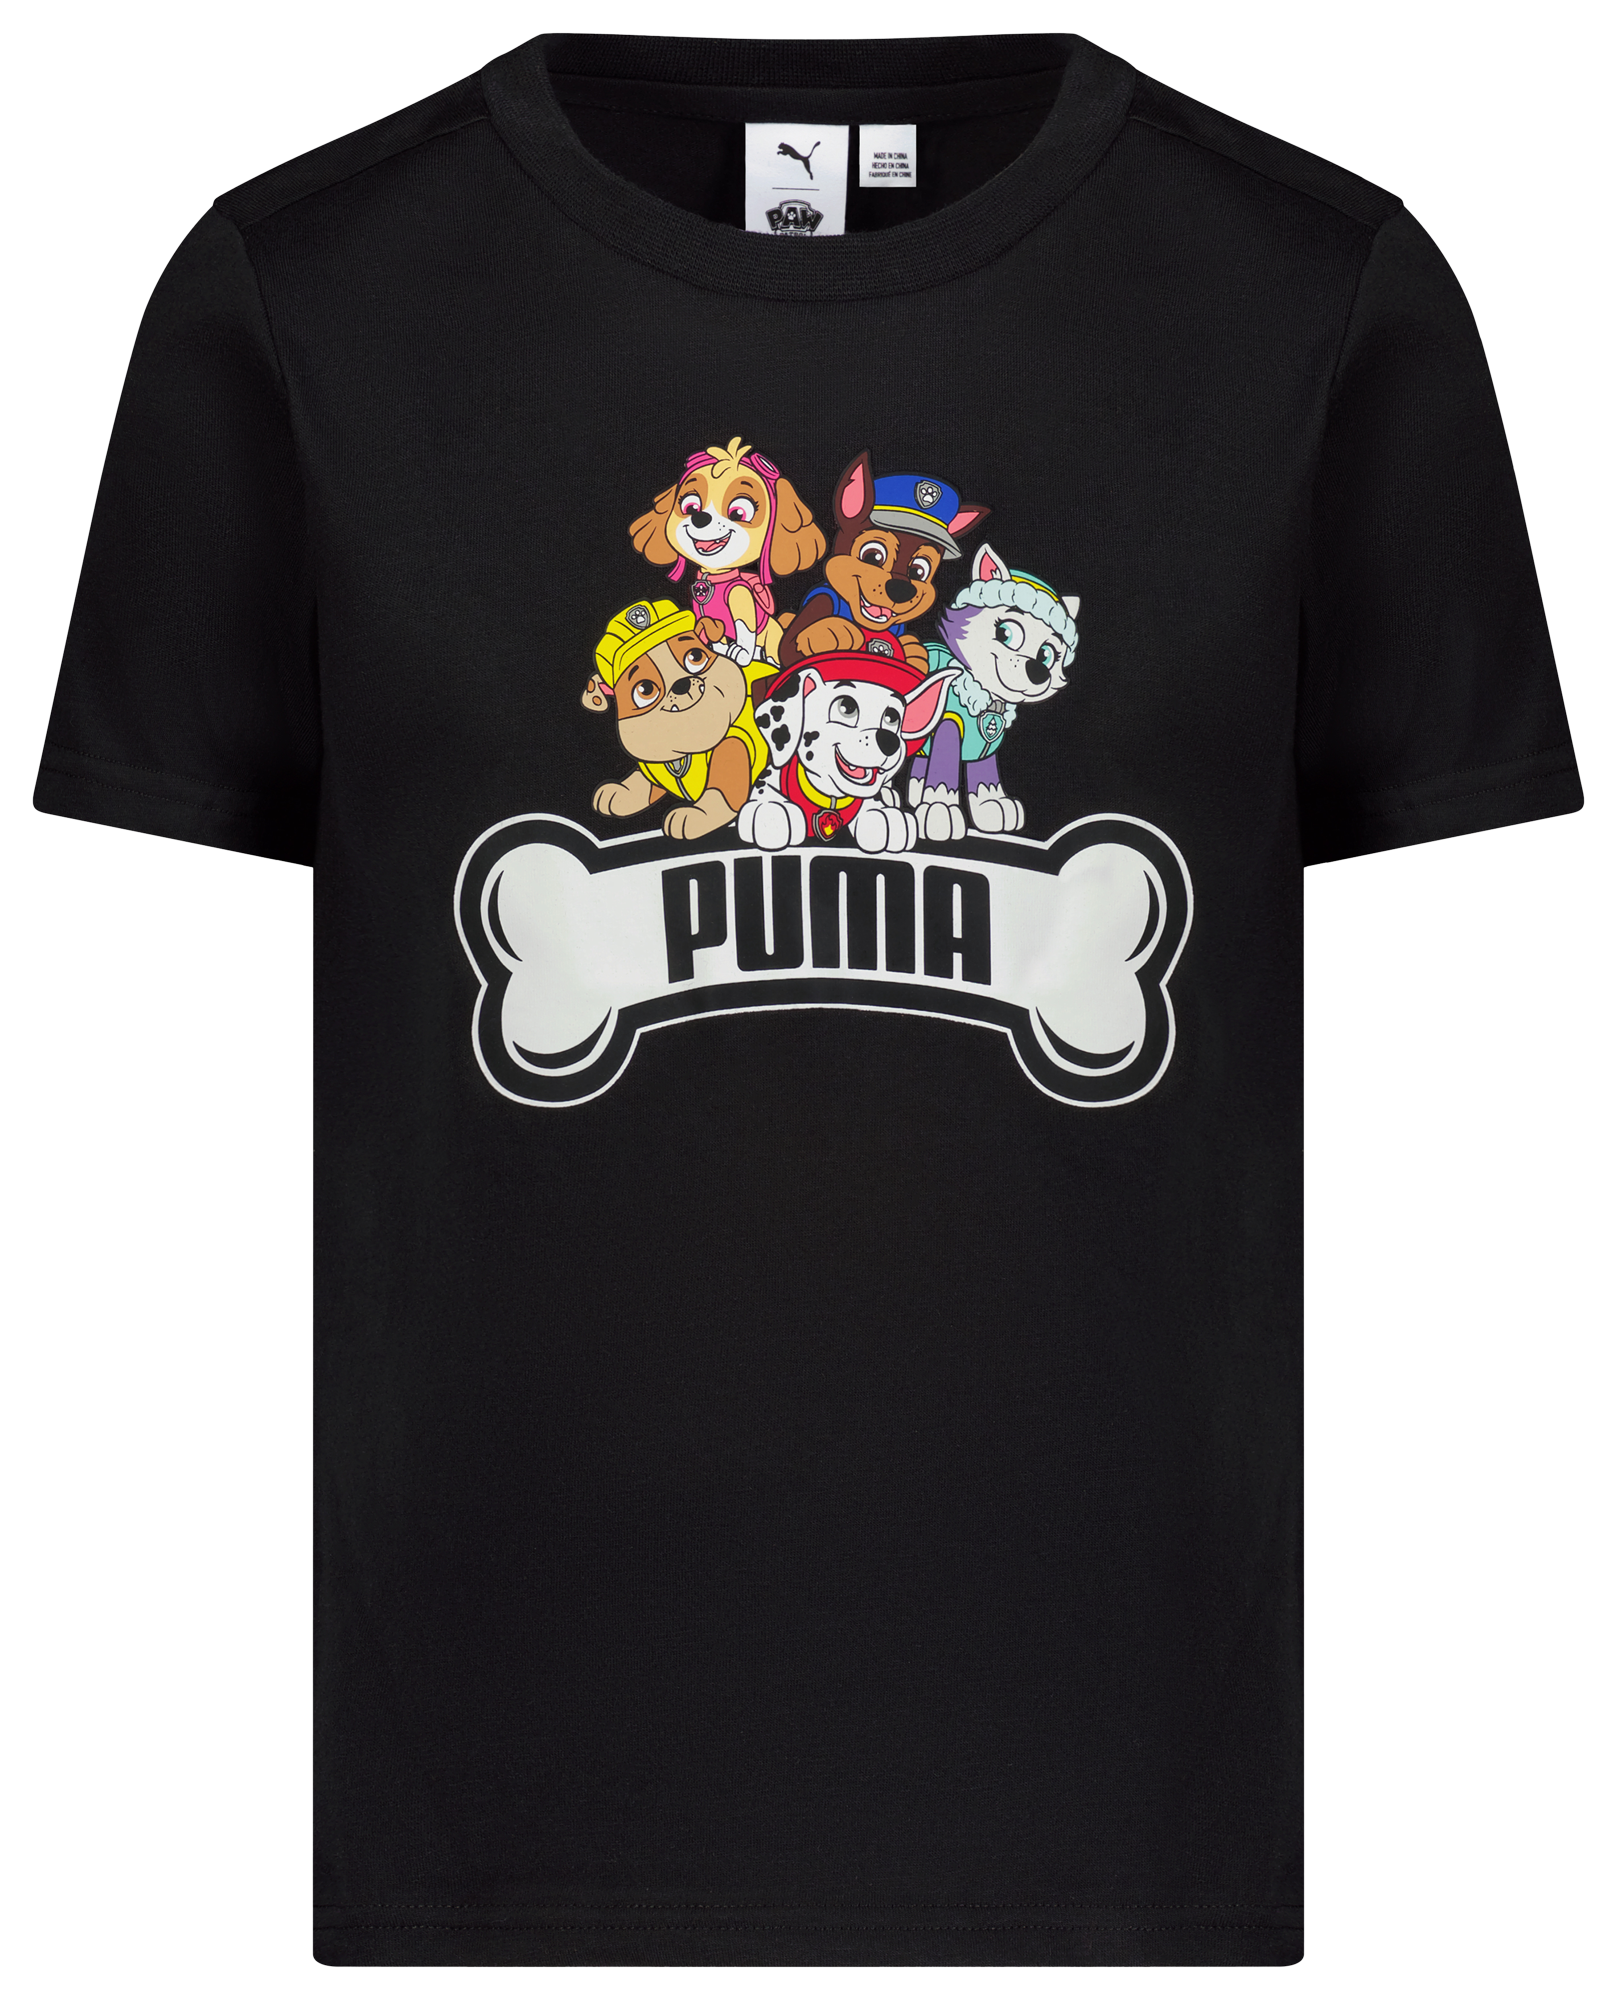 PUMA Paw Patrol T-Shirt